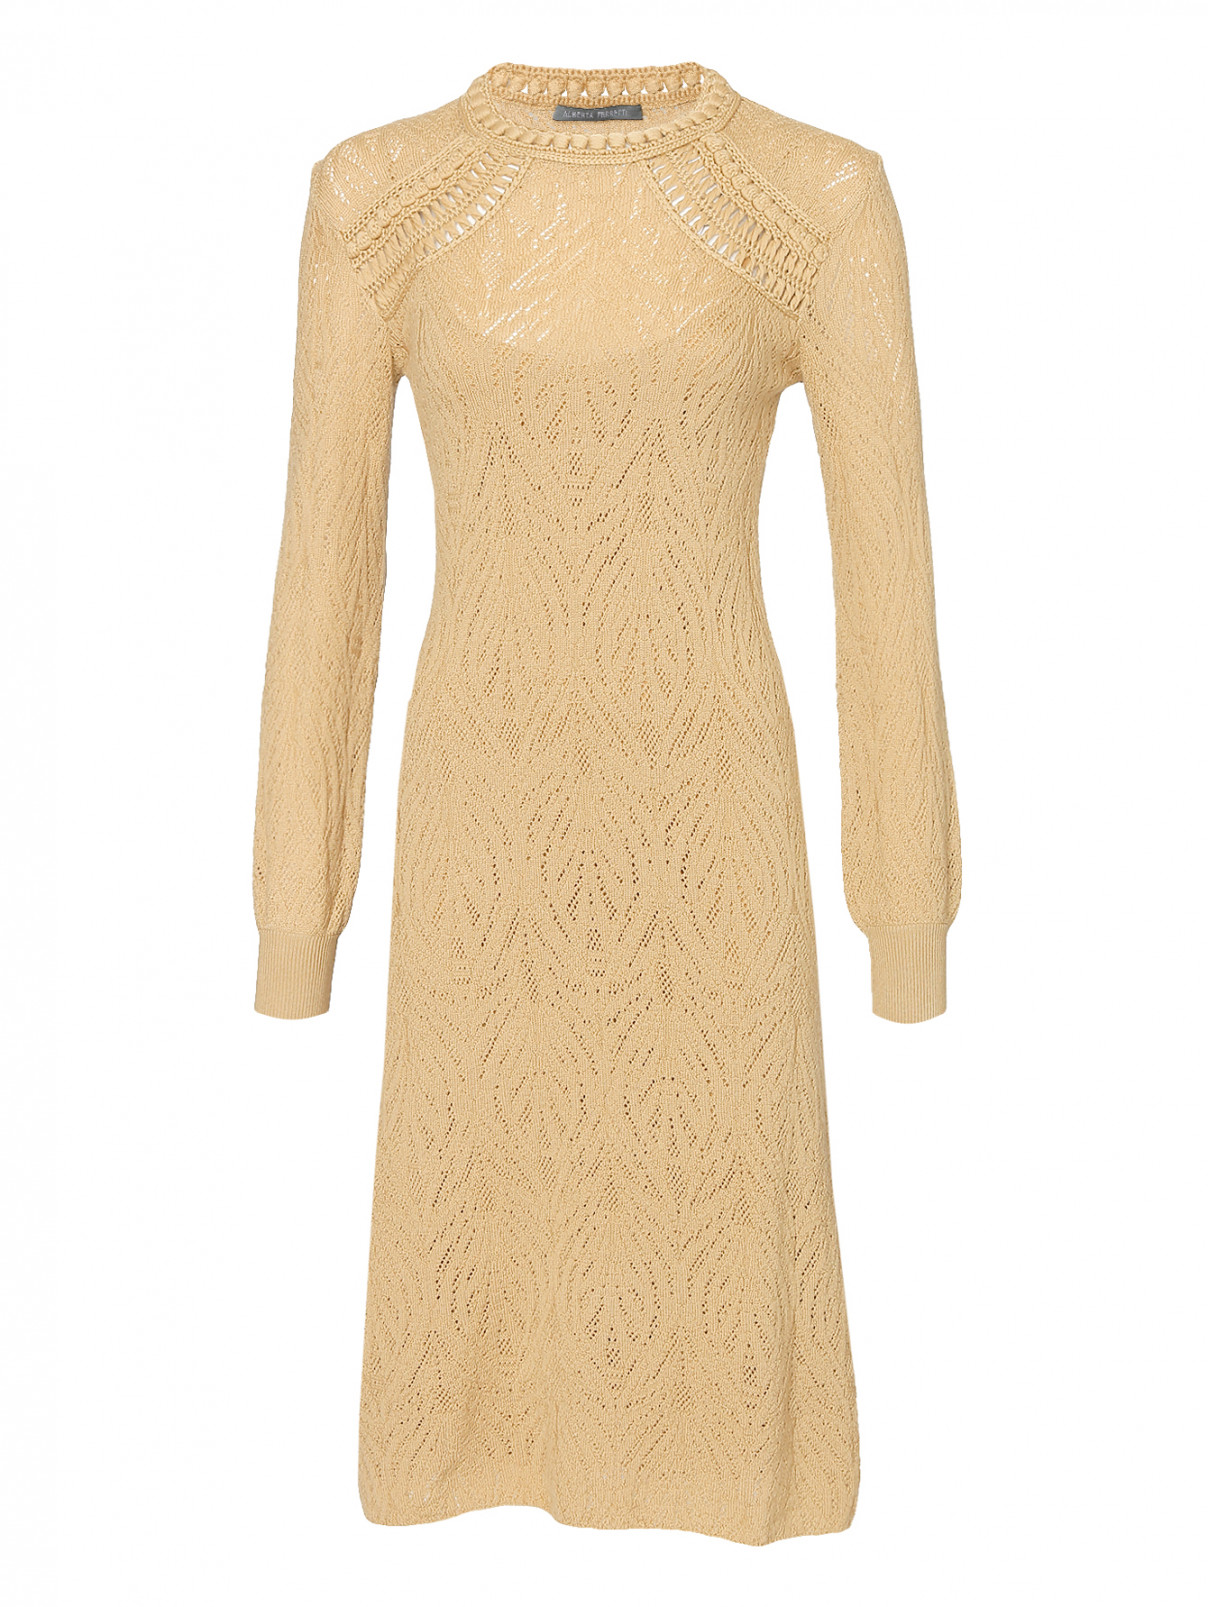 Трикотажное платье из шерсти ажурной вязки Alberta Ferretti  –  Общий вид  – Цвет:  Бежевый